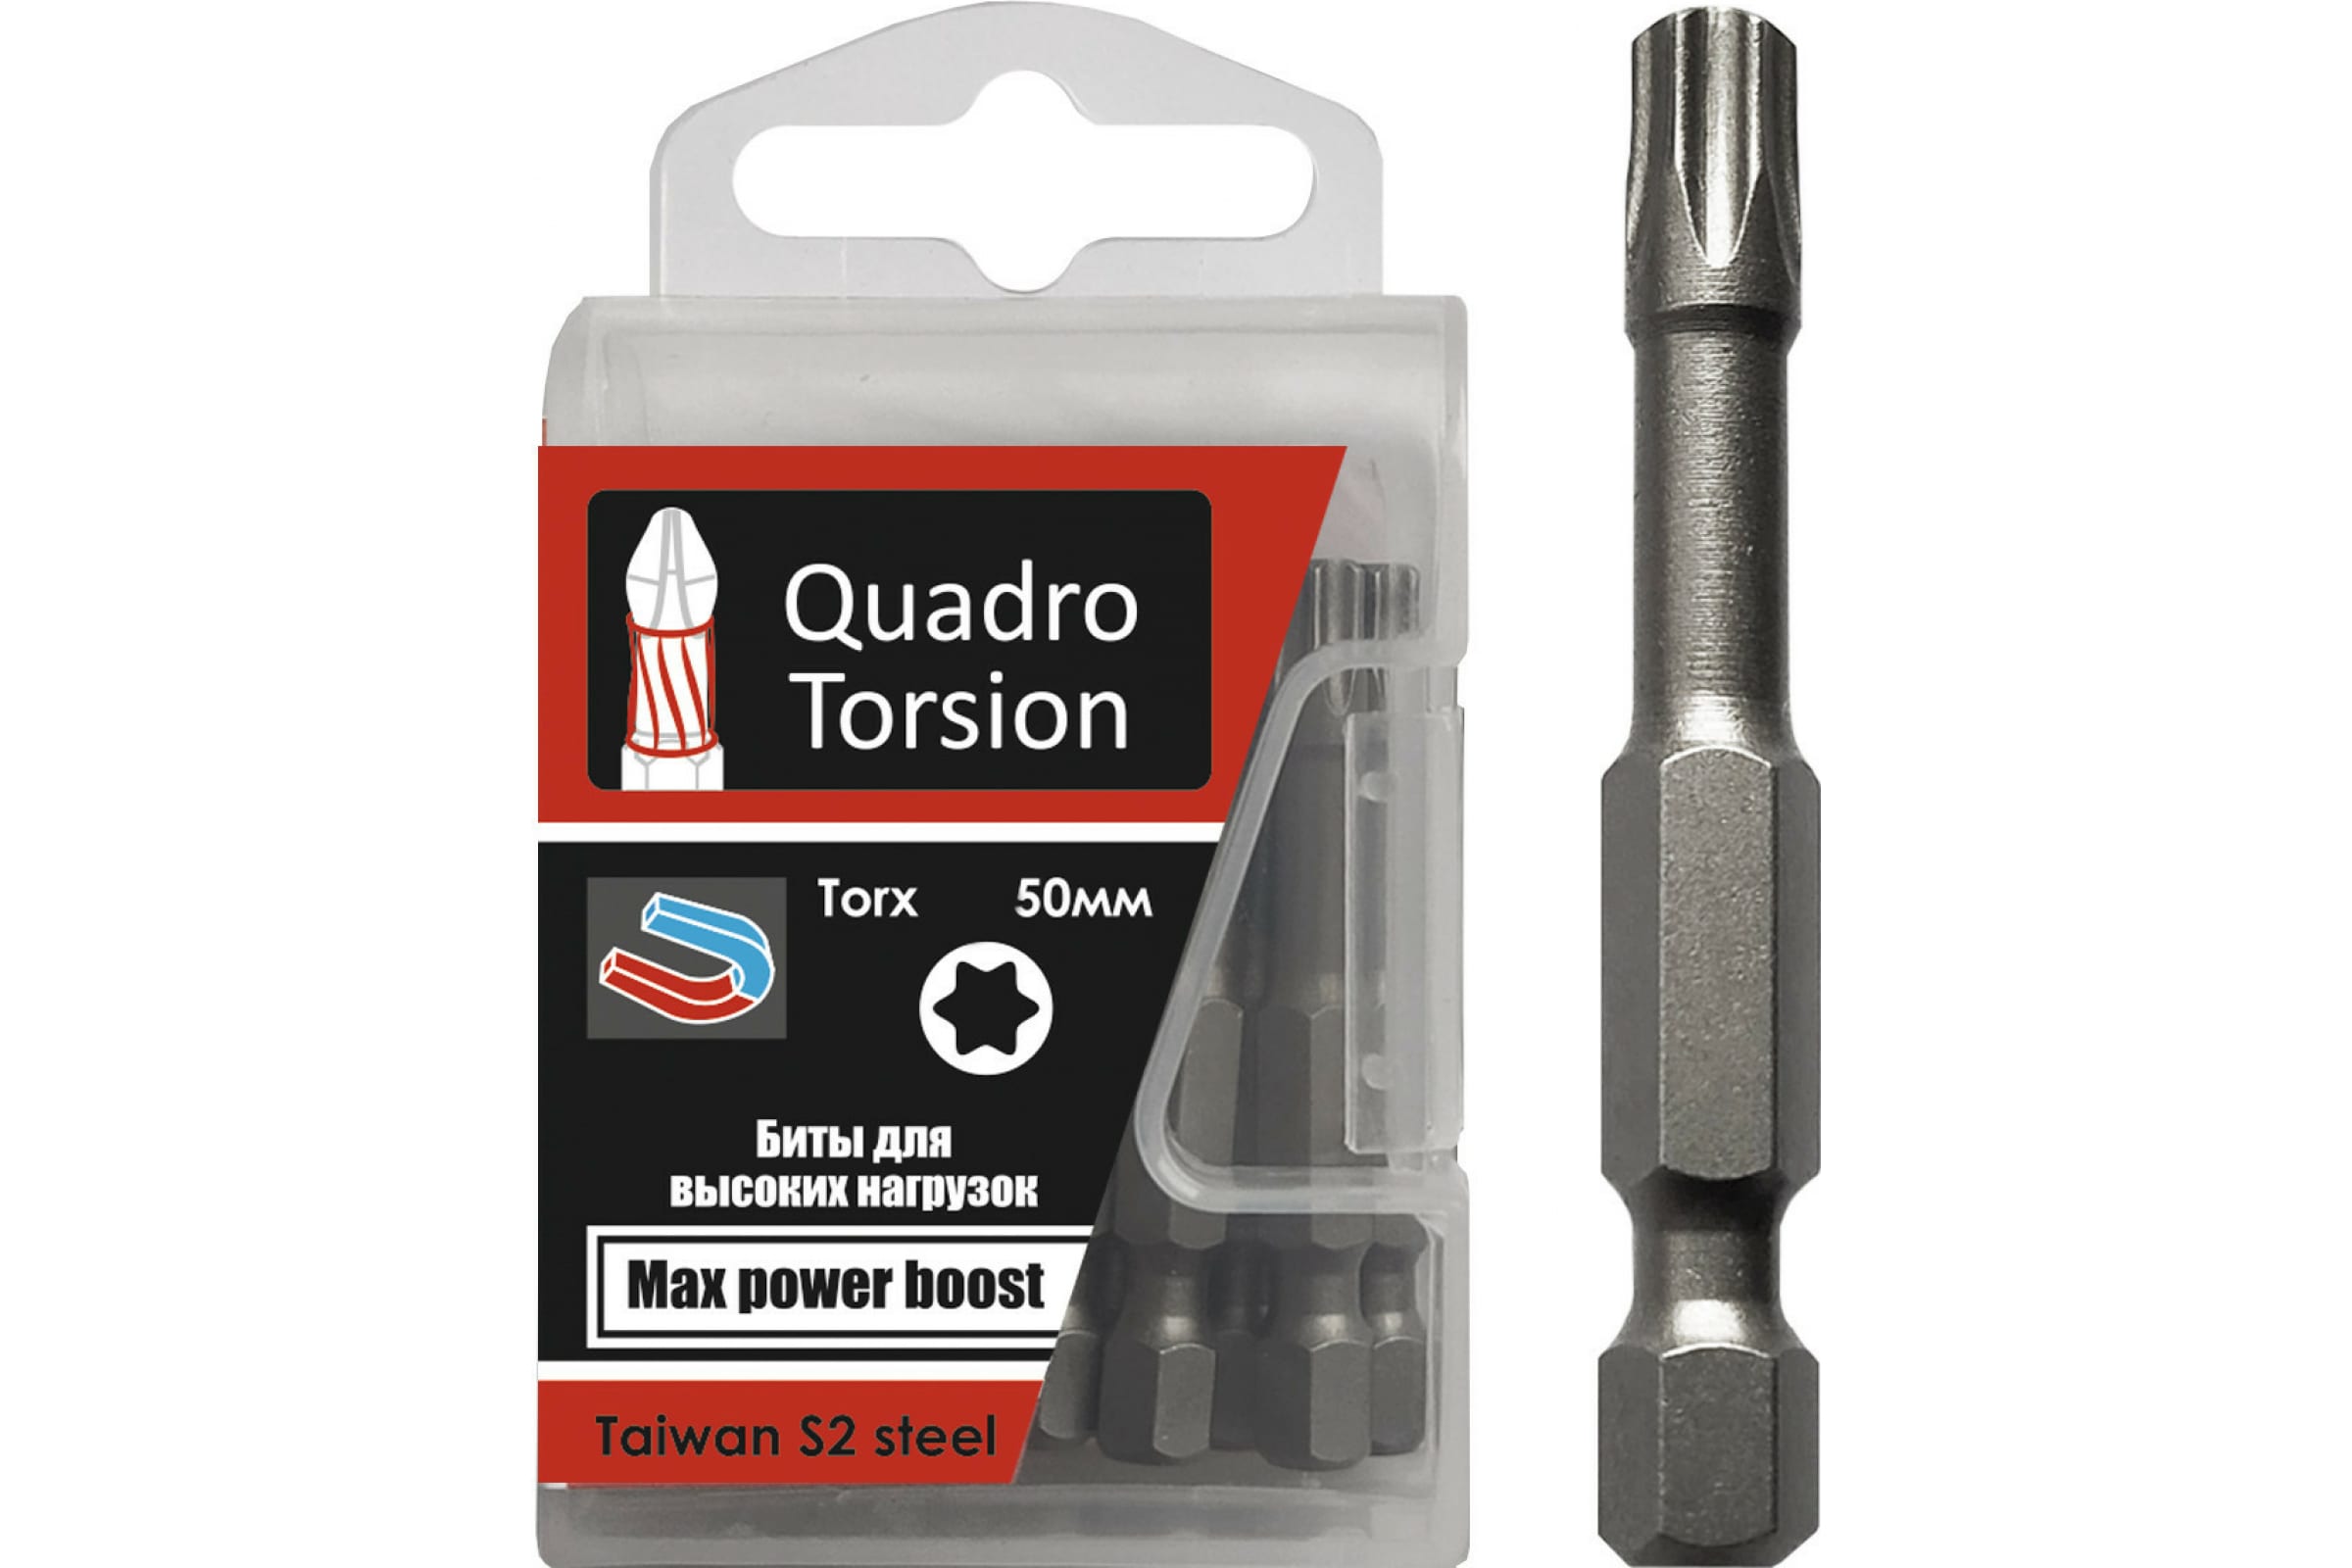 Quadro Torsion бита 1/4 40-50мм Torx 10 шт./кор. 434050 бита torx 10 шт t40 50 мм 1 4 quadro torsion 434050